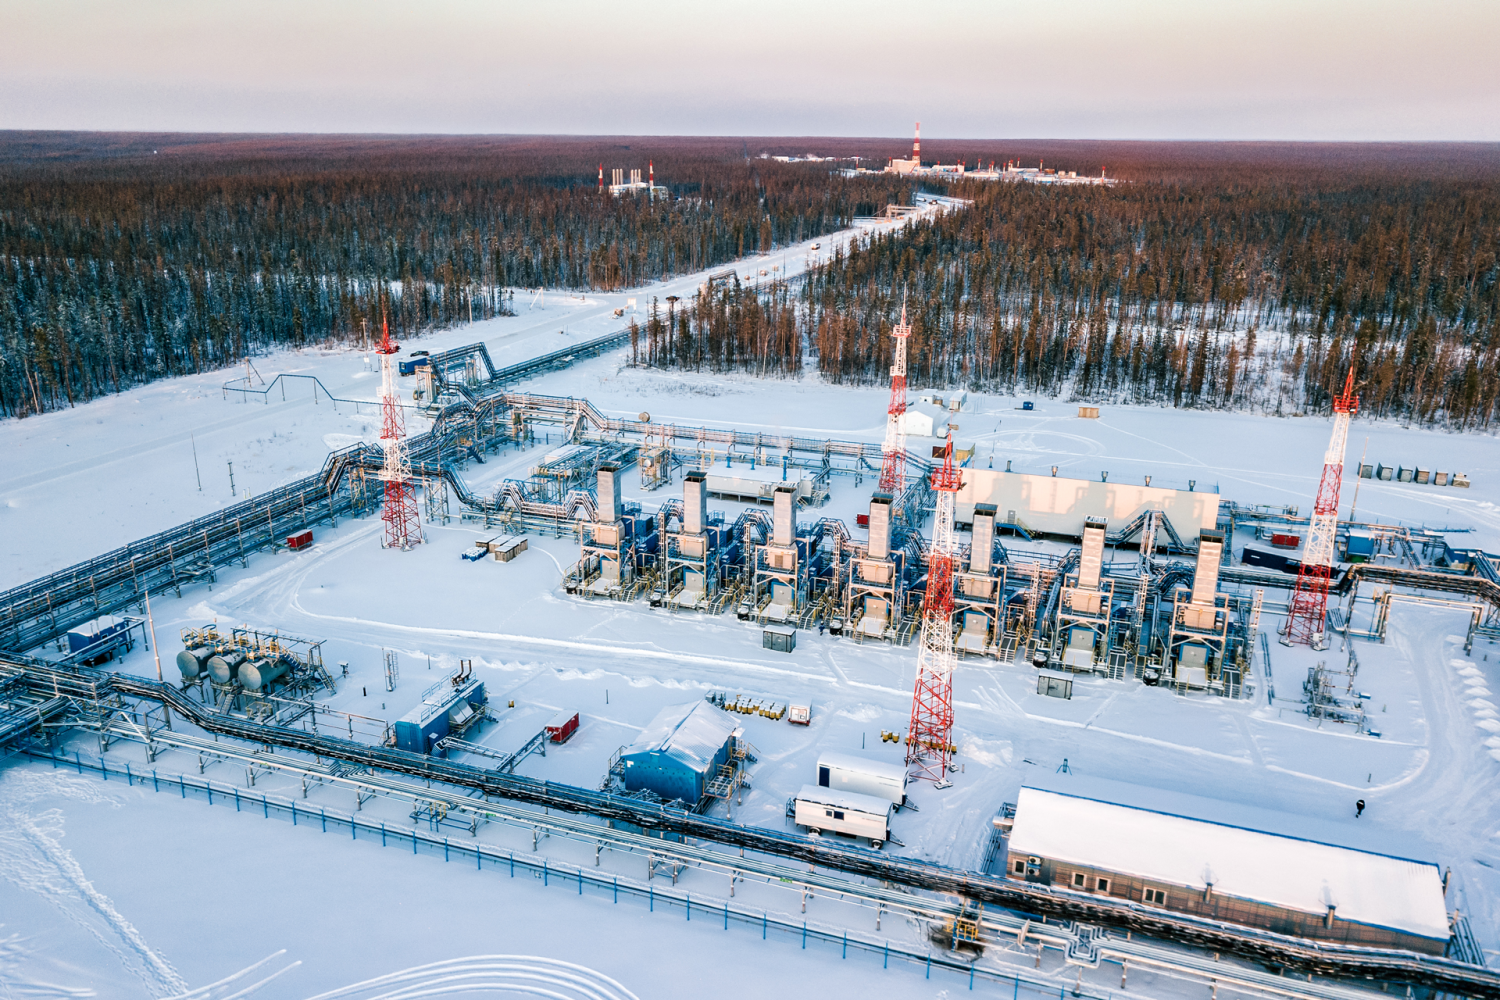 Đặc điểm pháp lý nổi bật trong qui định đối với việc sử dụng tài nguyên dầu và khí của Liên bang Nga (Phần I)